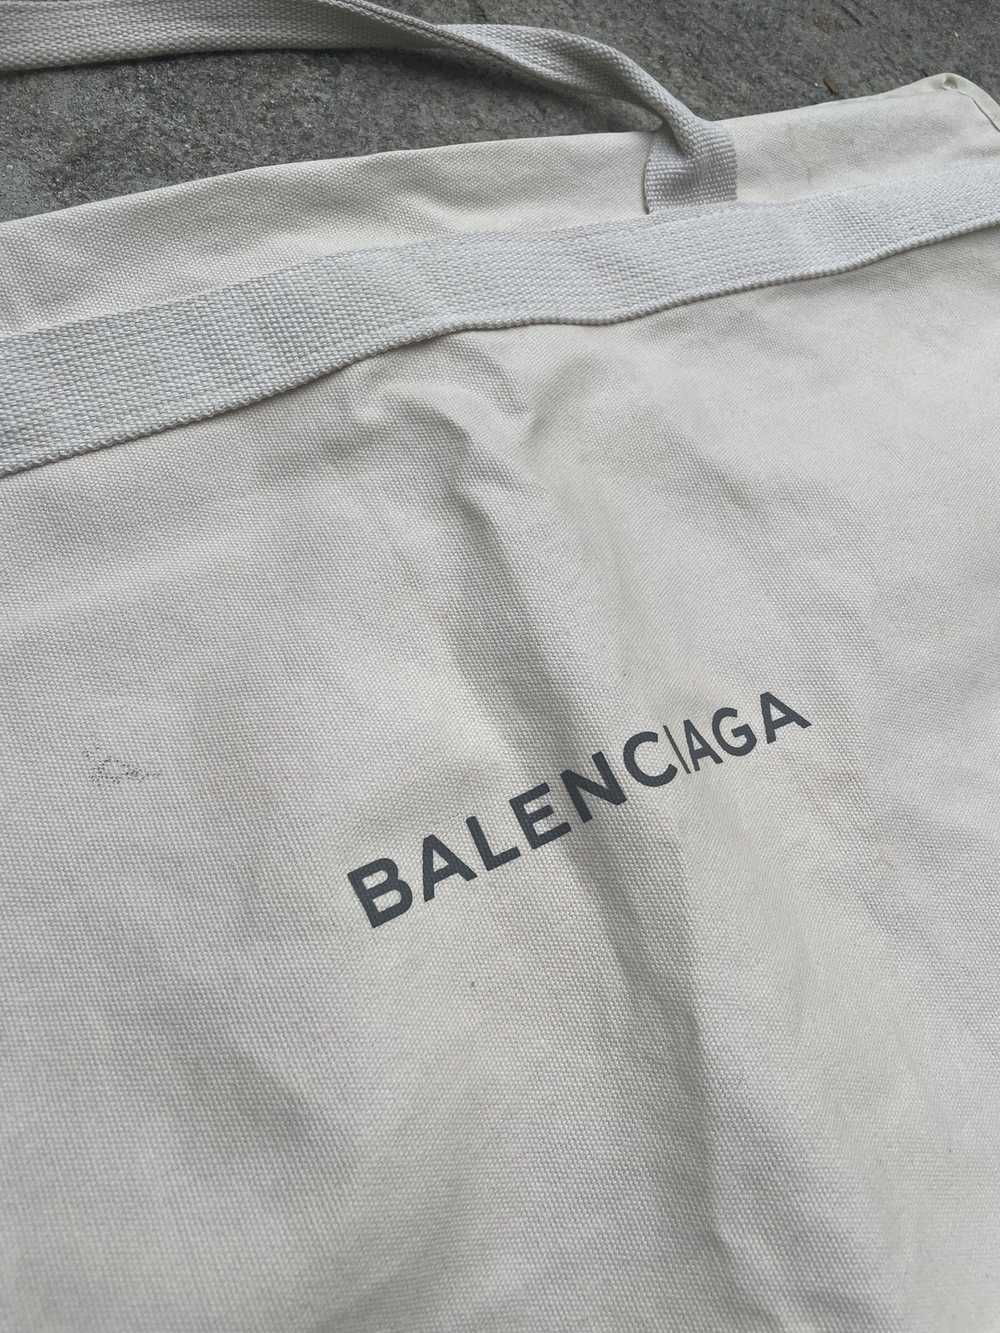 Balenciaga Balenciaga Travel Dust Bag - image 1